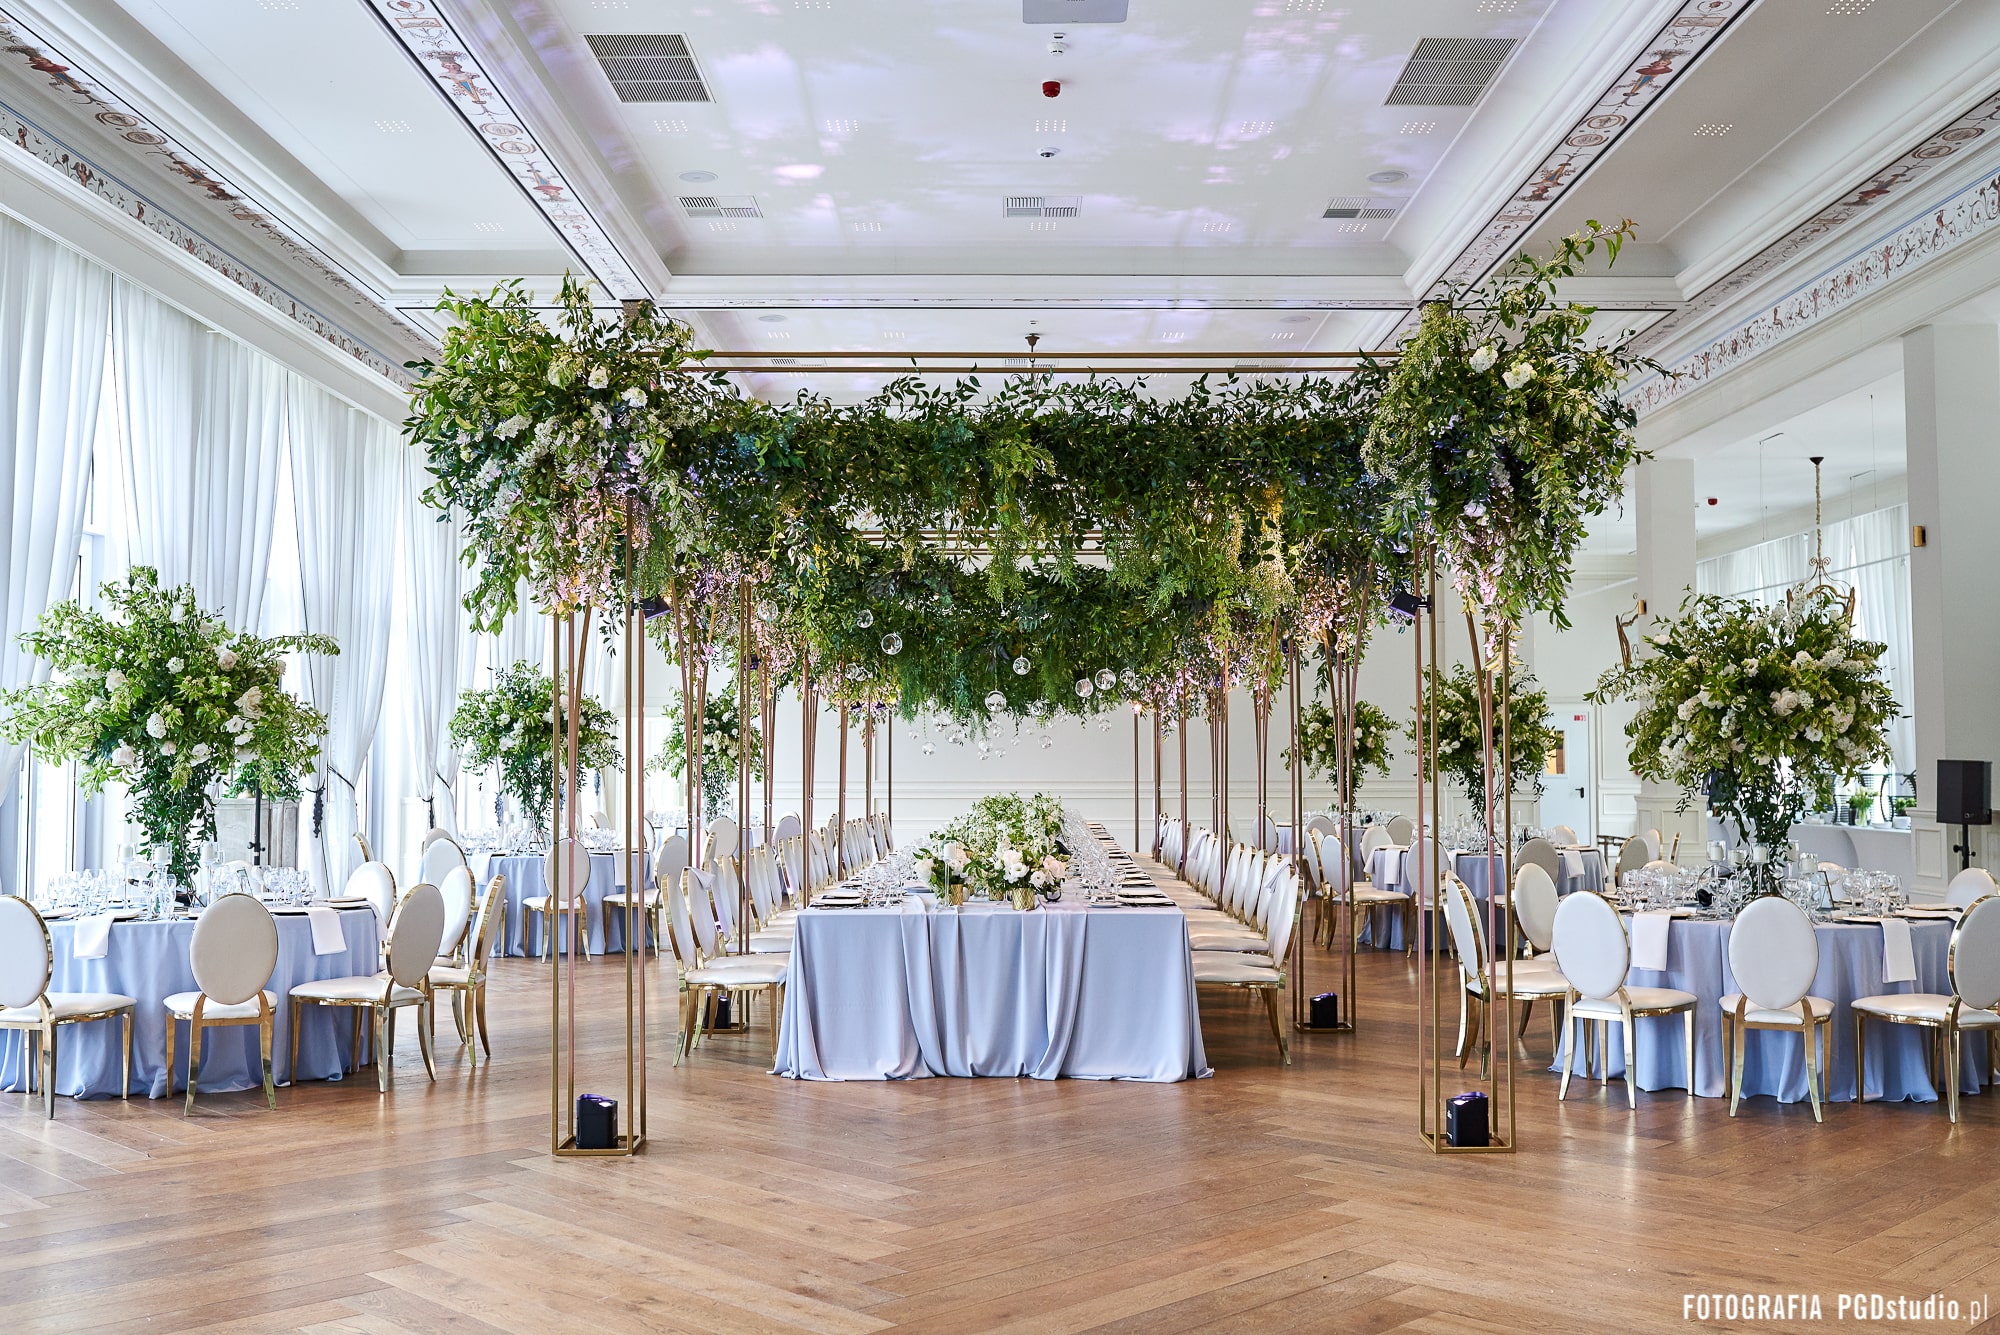 krzesła dekoracyjne na weselu, scenografia weselna, dekoracje na weselu, aranżacja weselna, konsultant ślubny warszawa